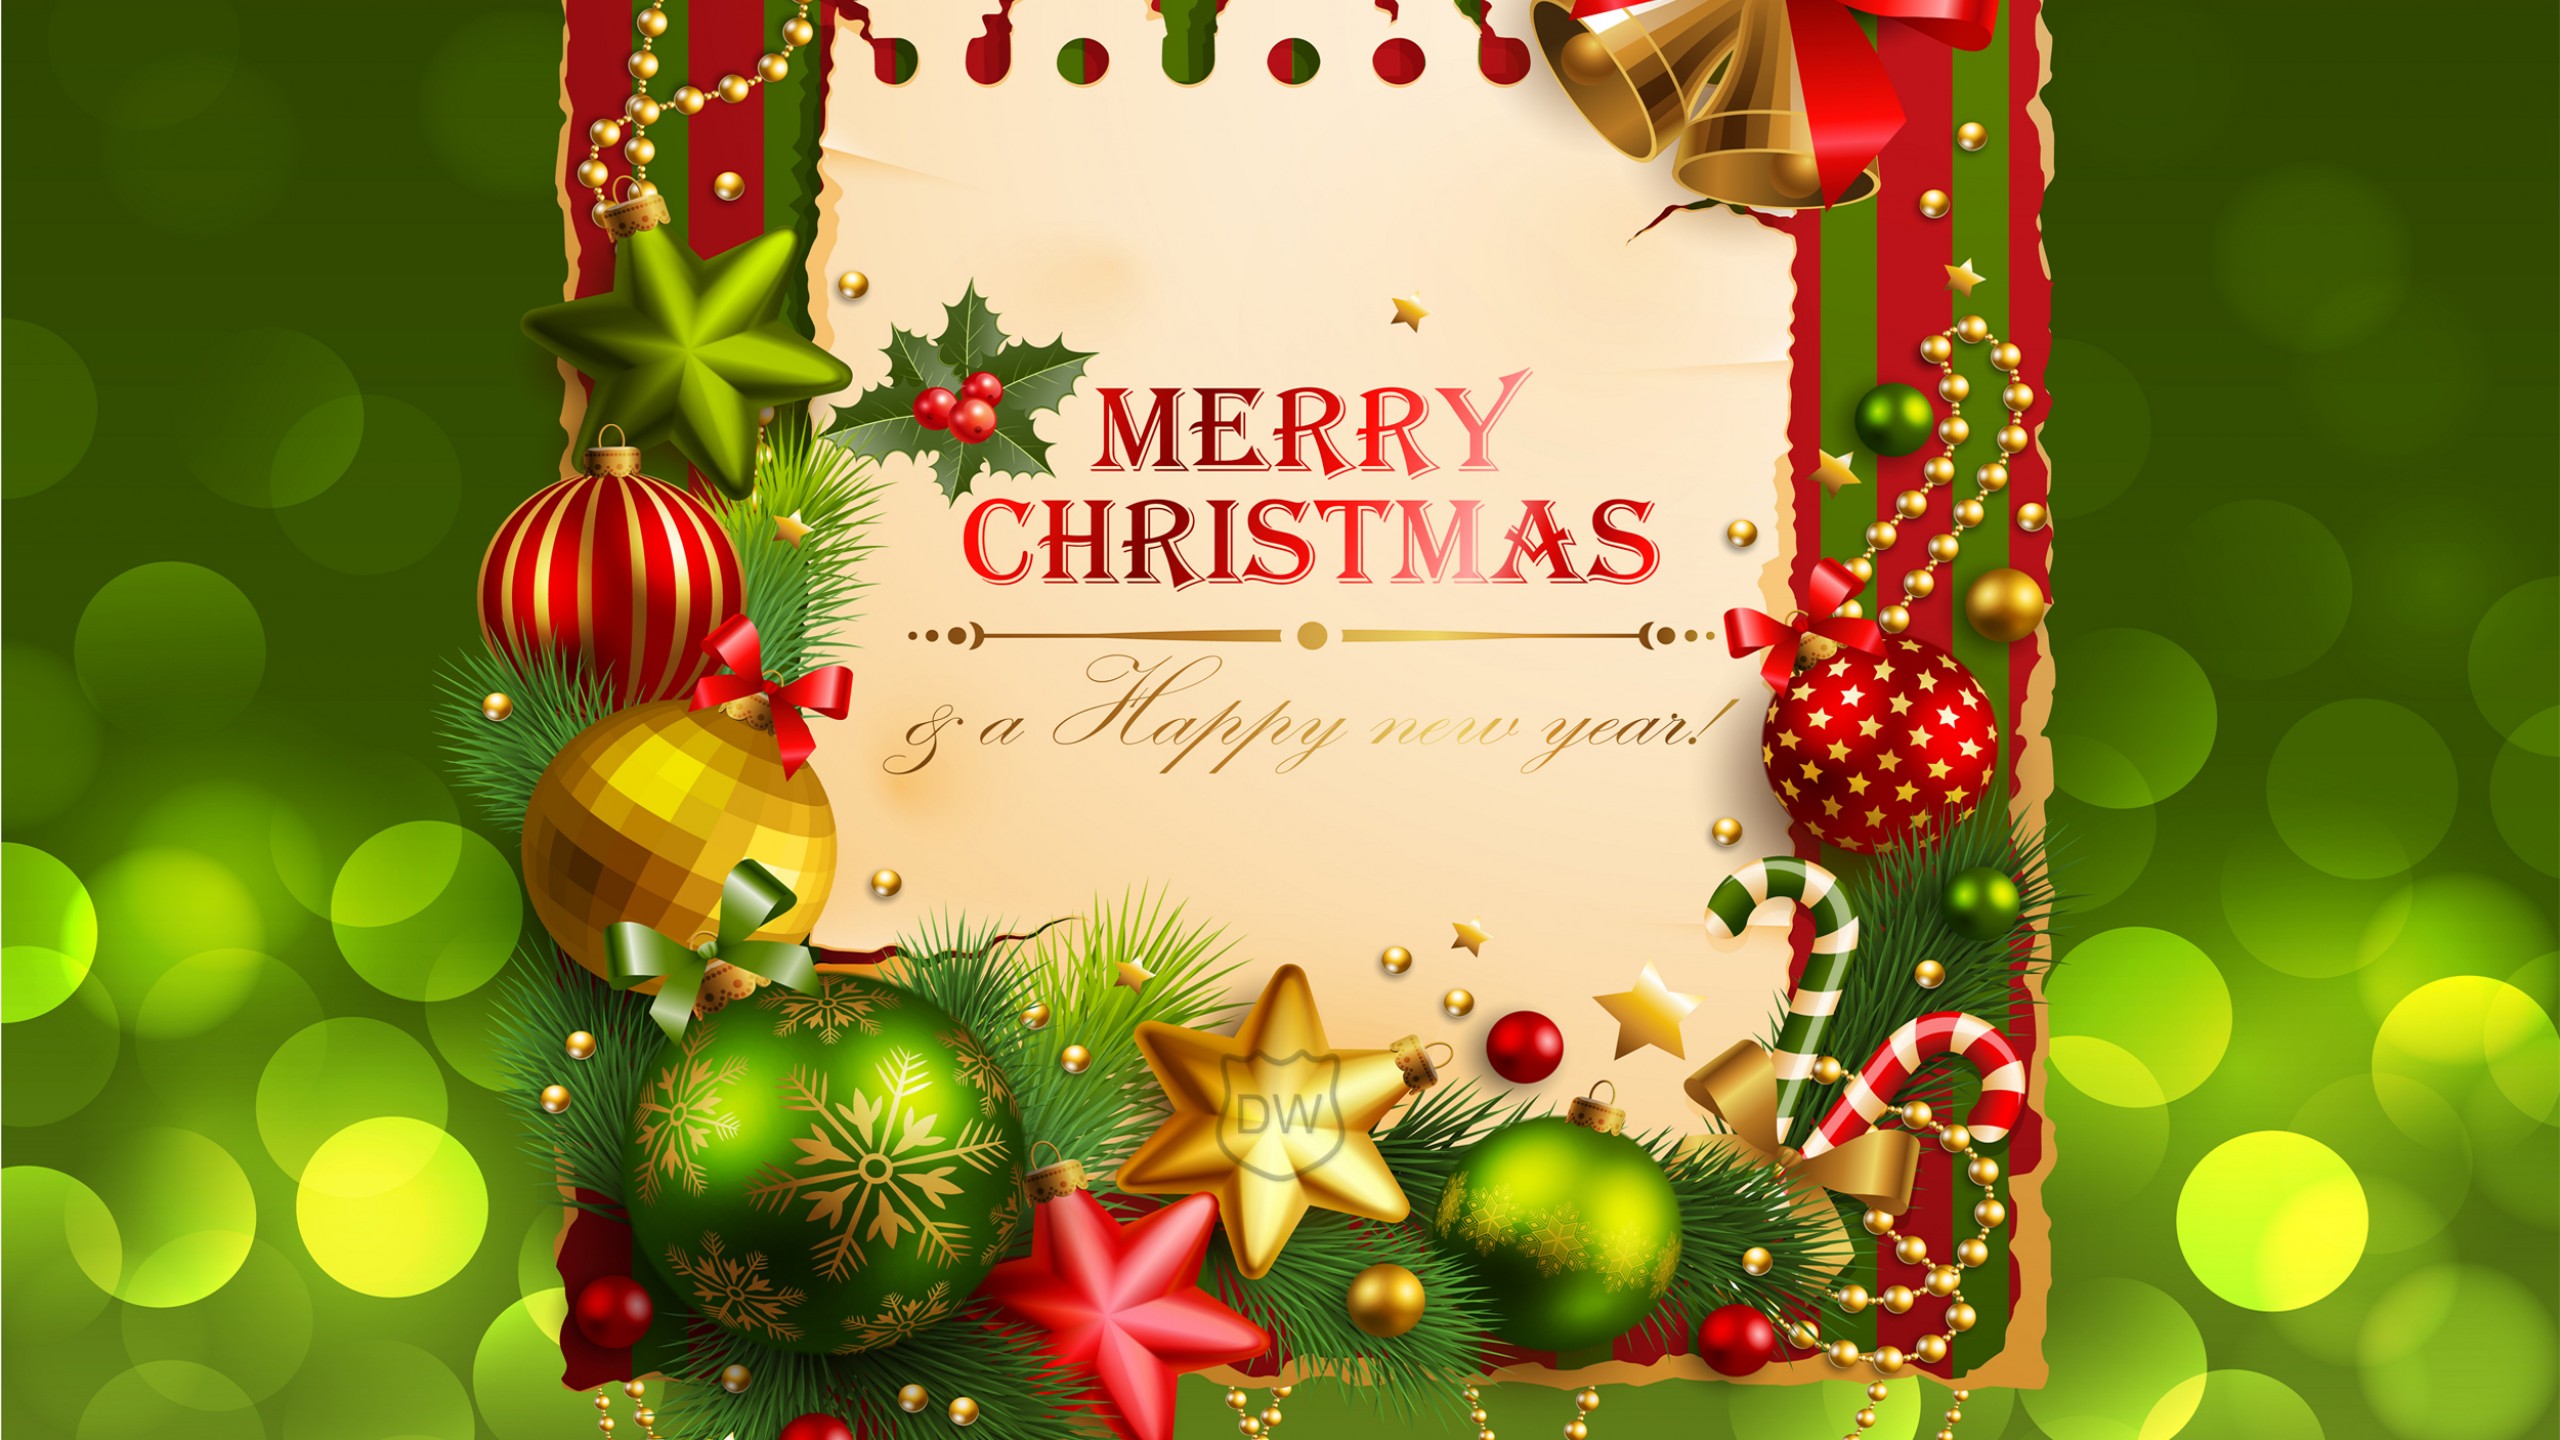 ハッピークリスマスのhd壁紙,クリスマスの飾り,クリスマス,クリスマスオーナメント,クリスマス・イブ,グリーティングカード